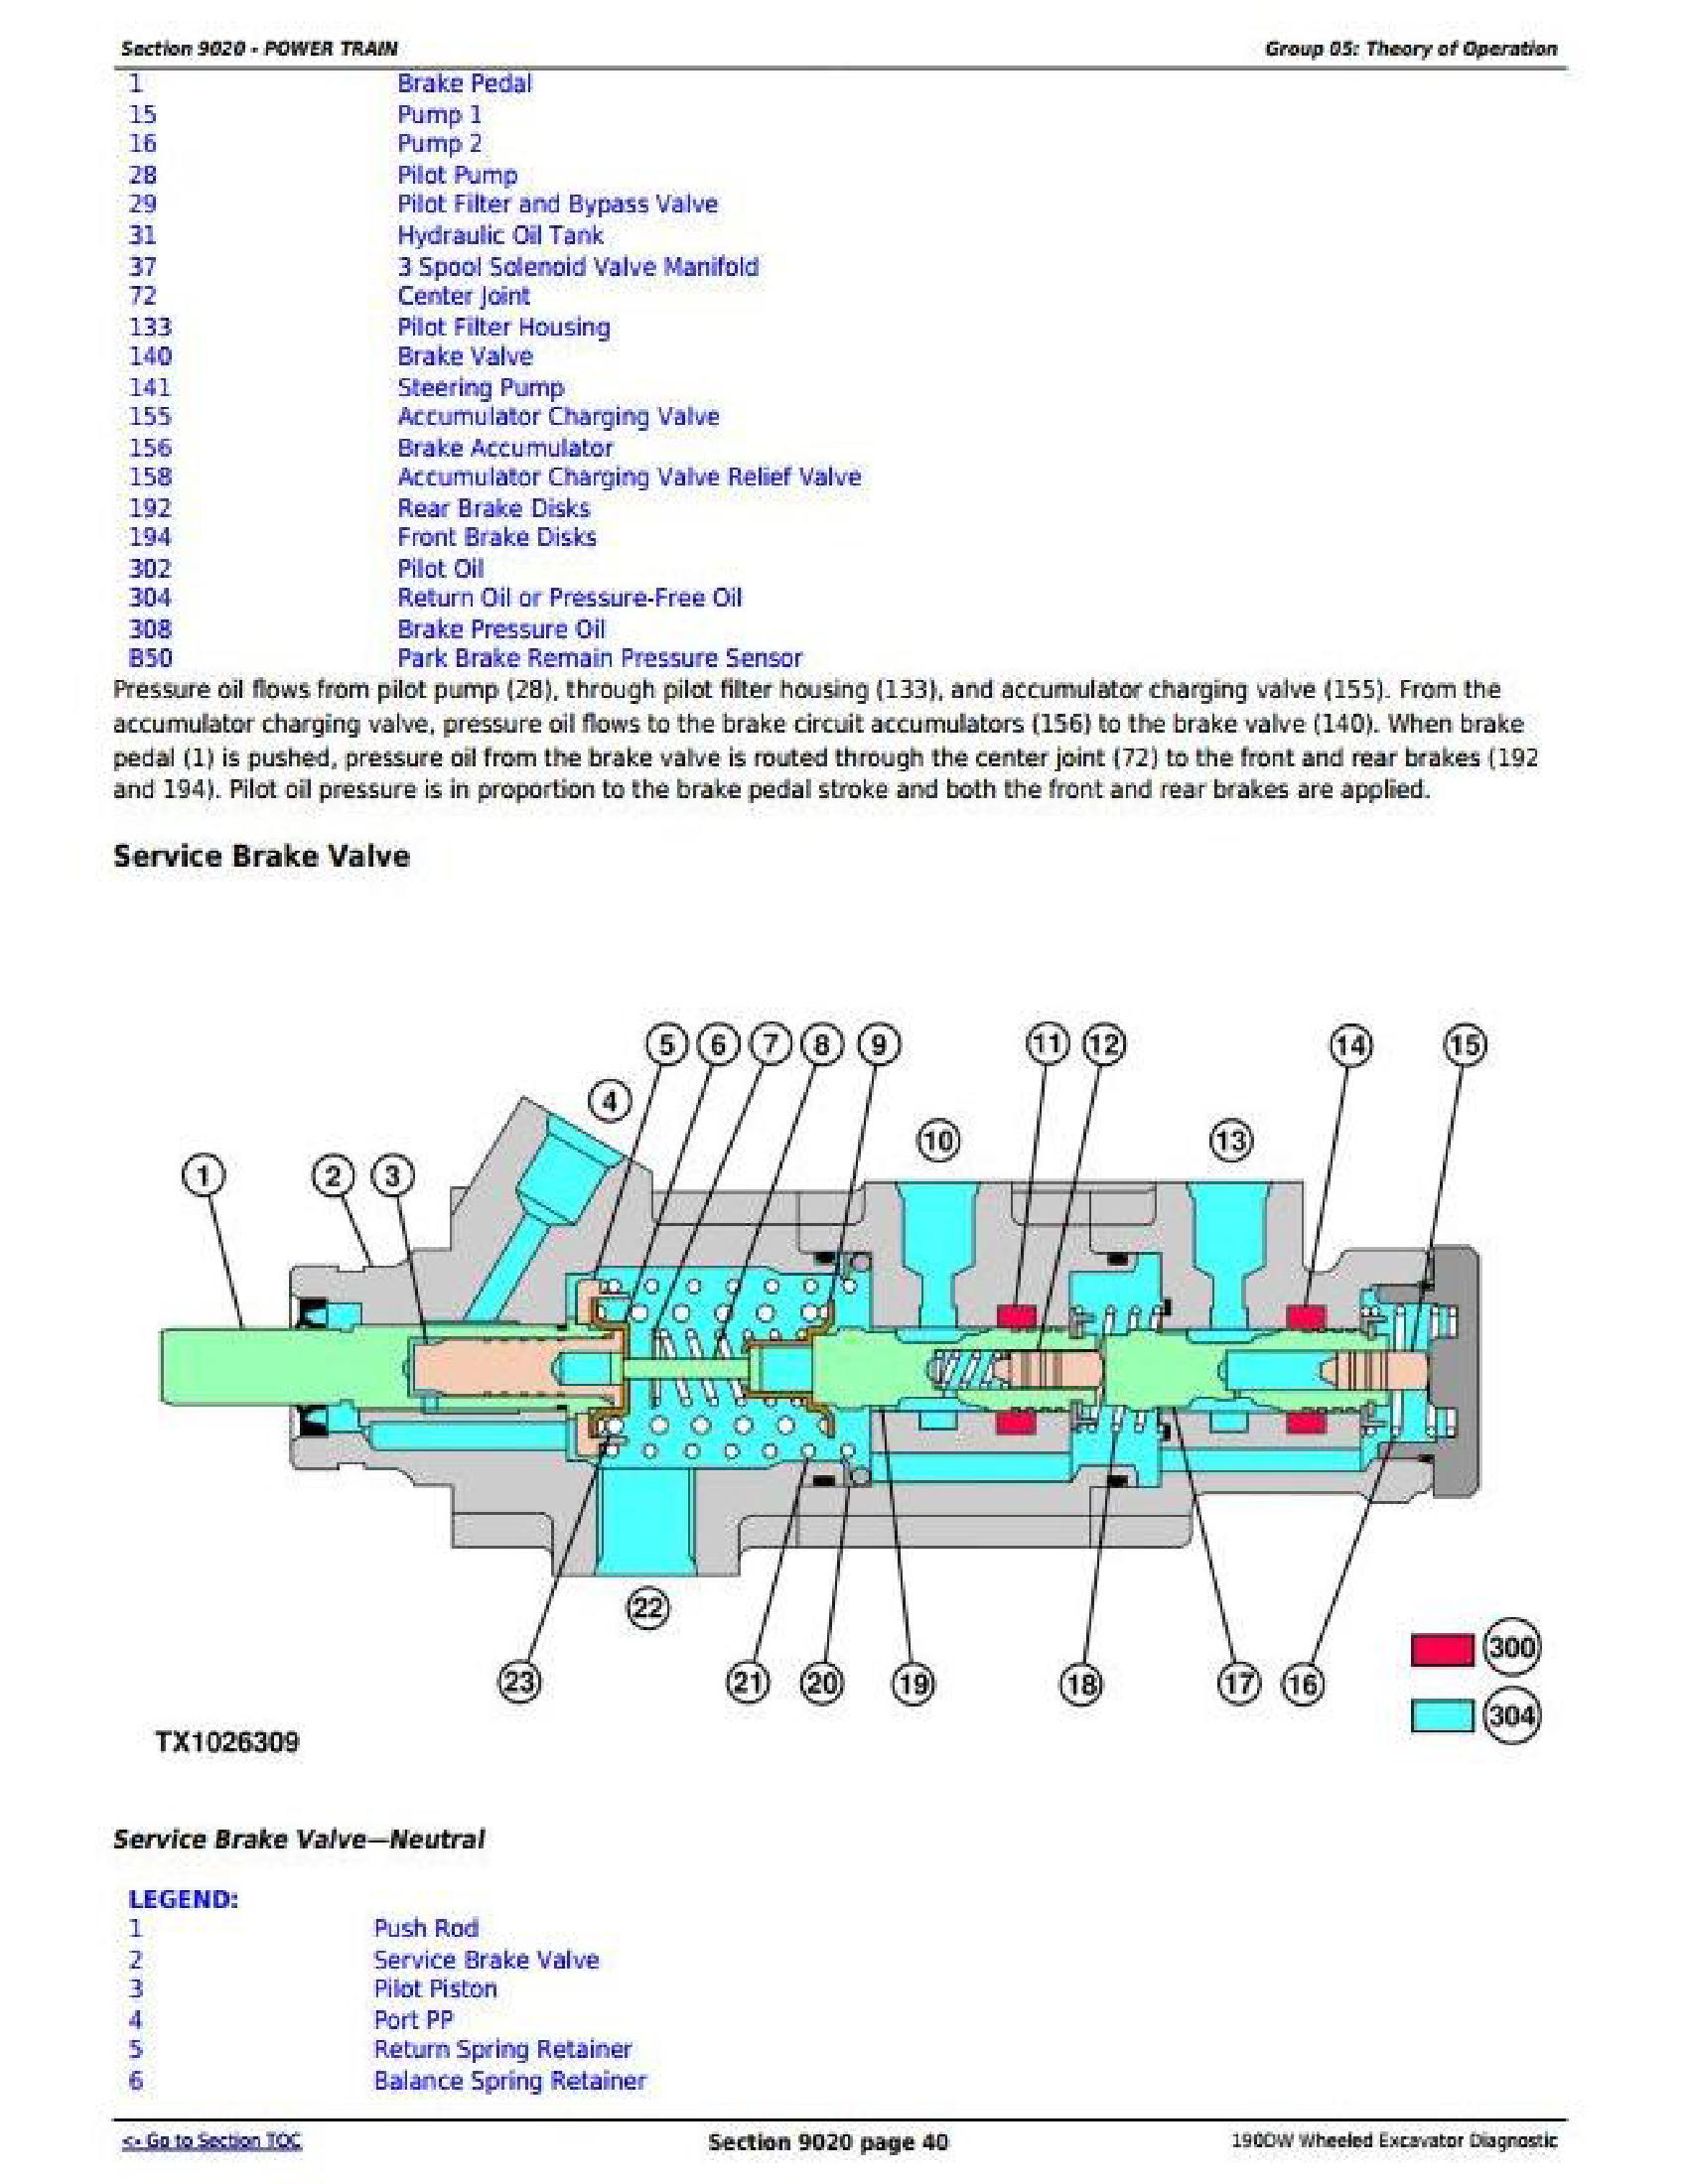 John Deere 190DW manual pdf